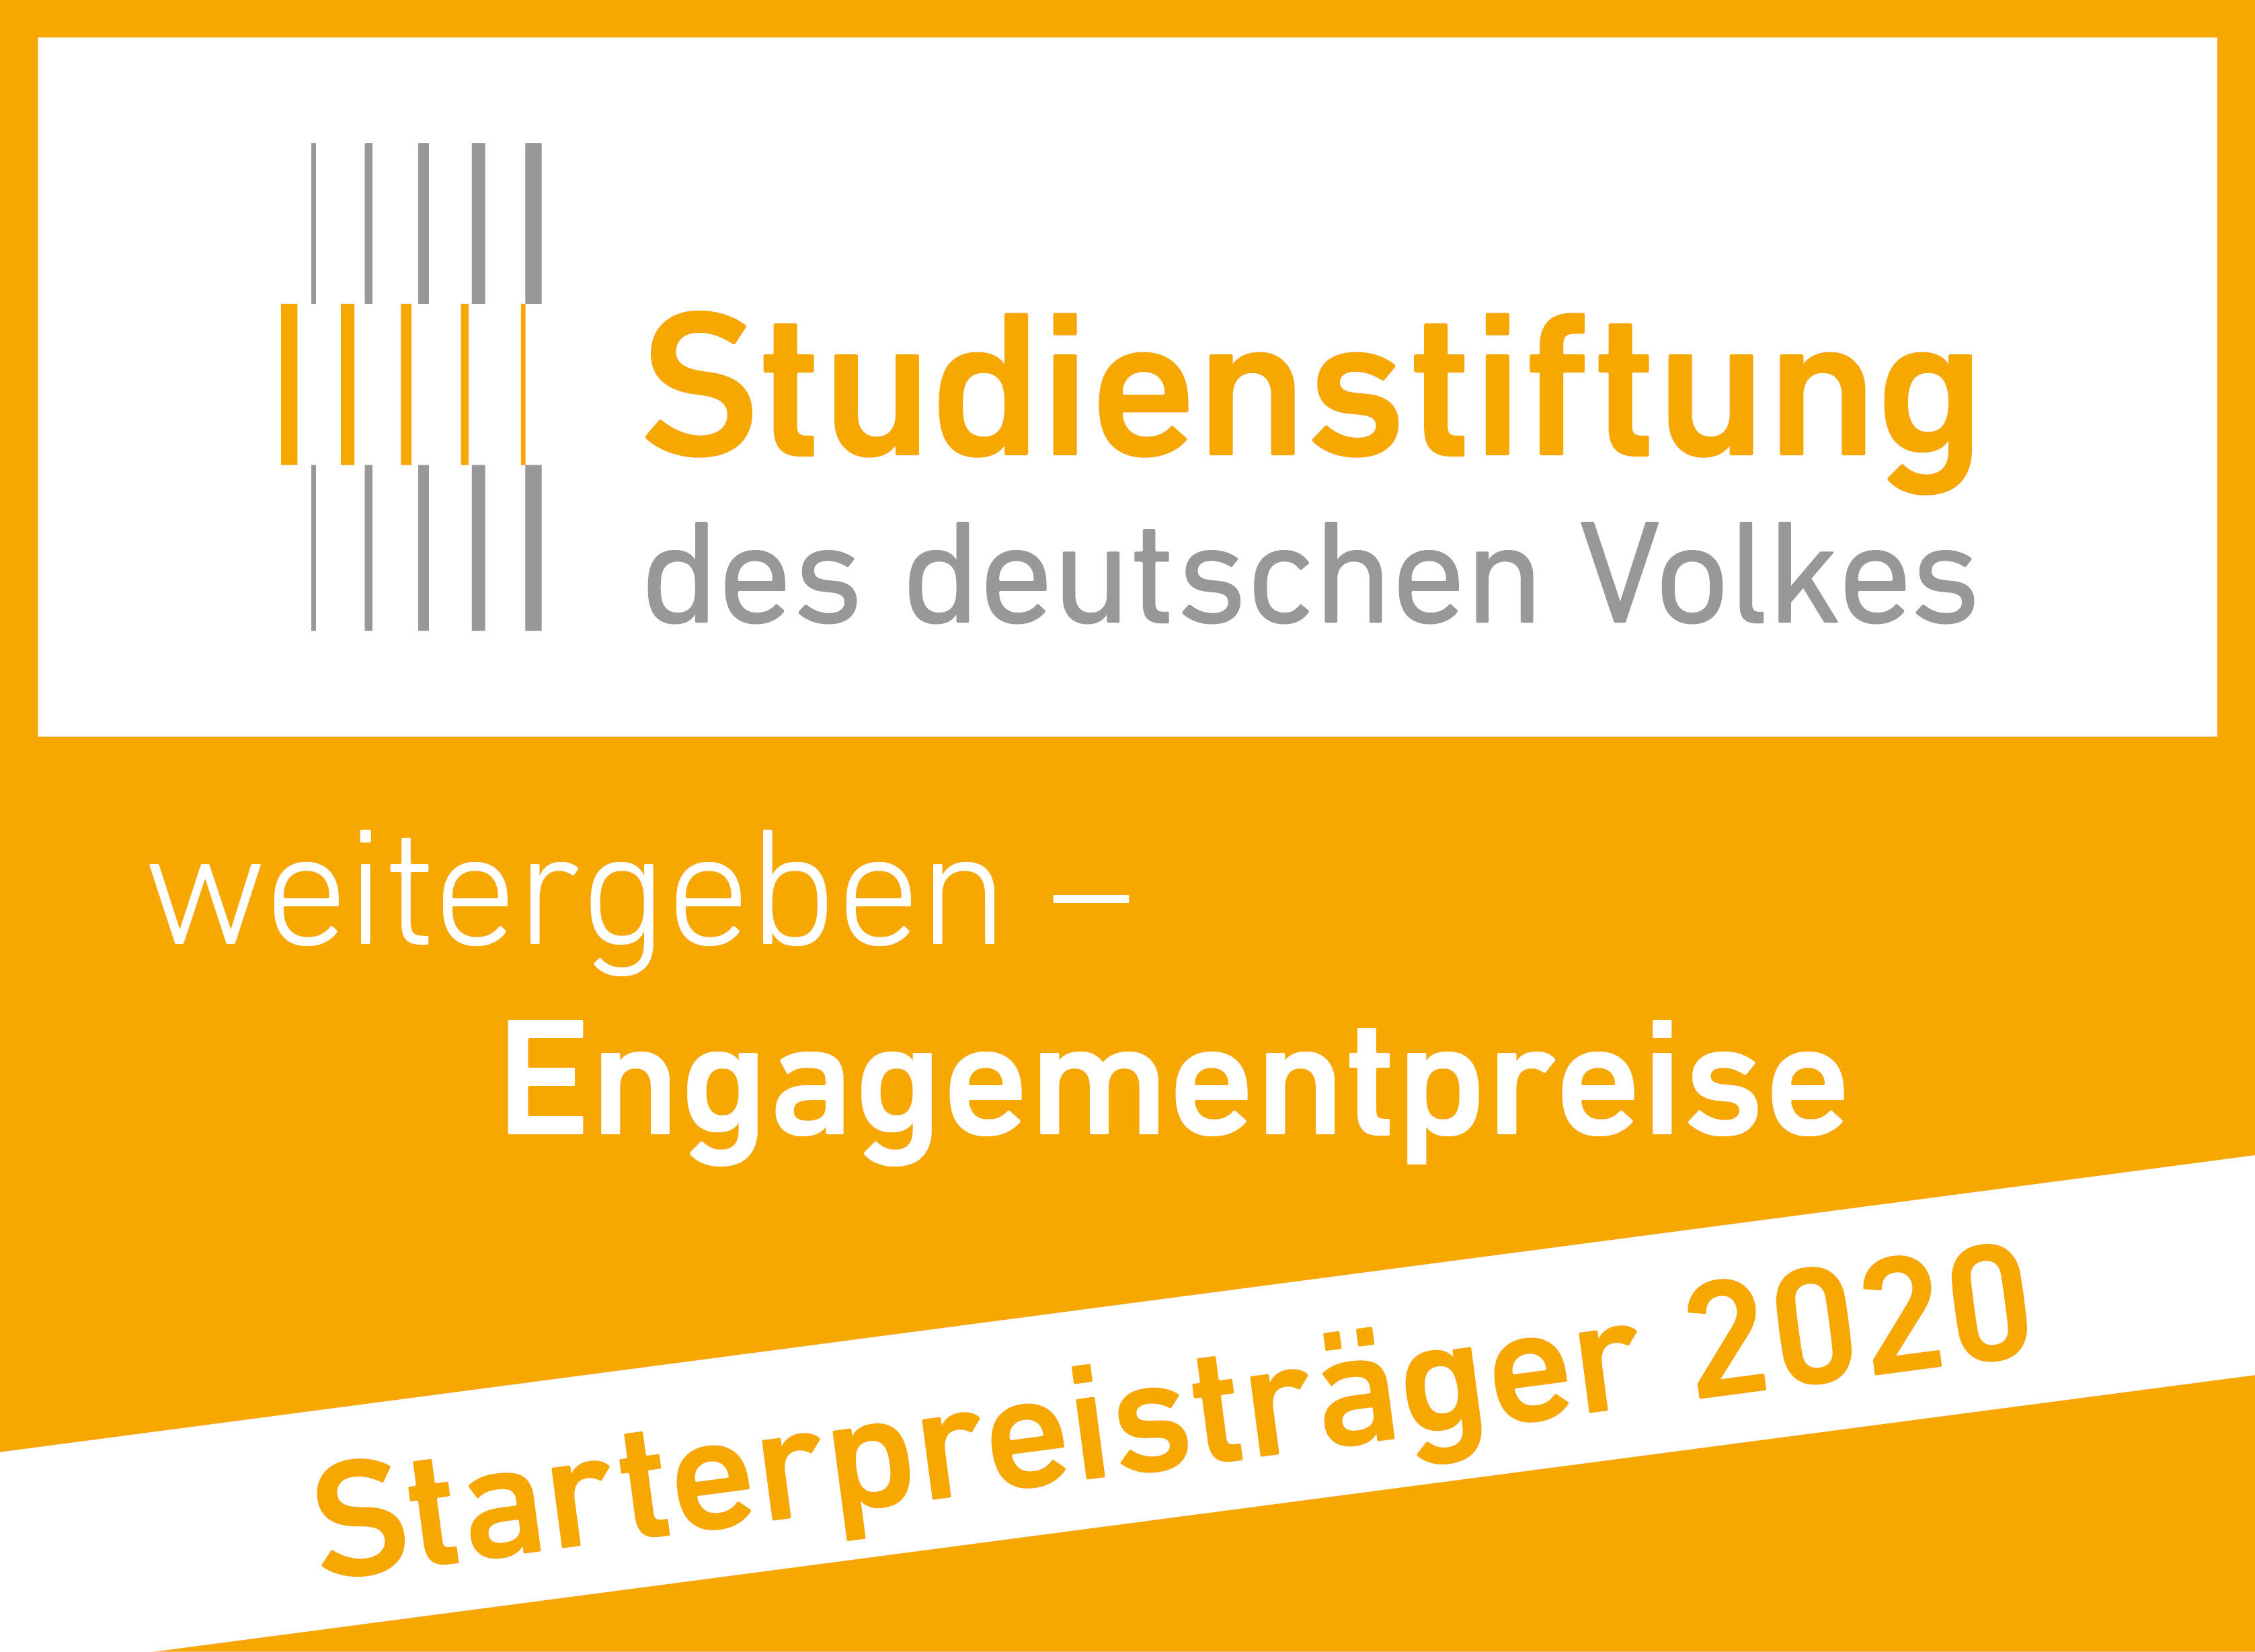 everyone needs a LEE_Mentoring-App für queere Jugendliche: Studienstiftung Engagementpreise: Starterpreisträger 2020